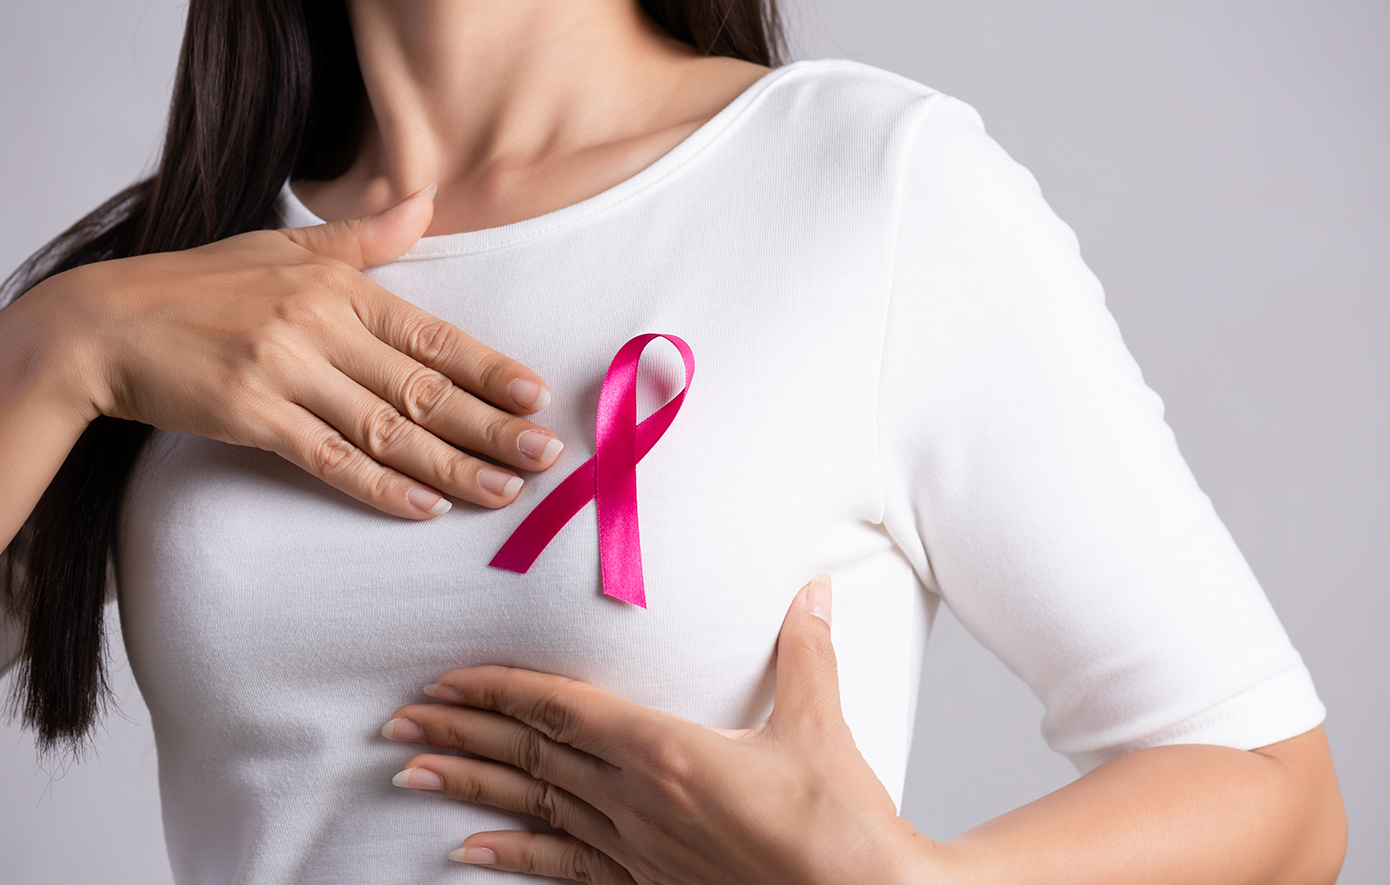 Υπάρχει λόγος ανησυχίας για καρκίνους που σχετίζονται με τα εμφυτεύματα στήθους;